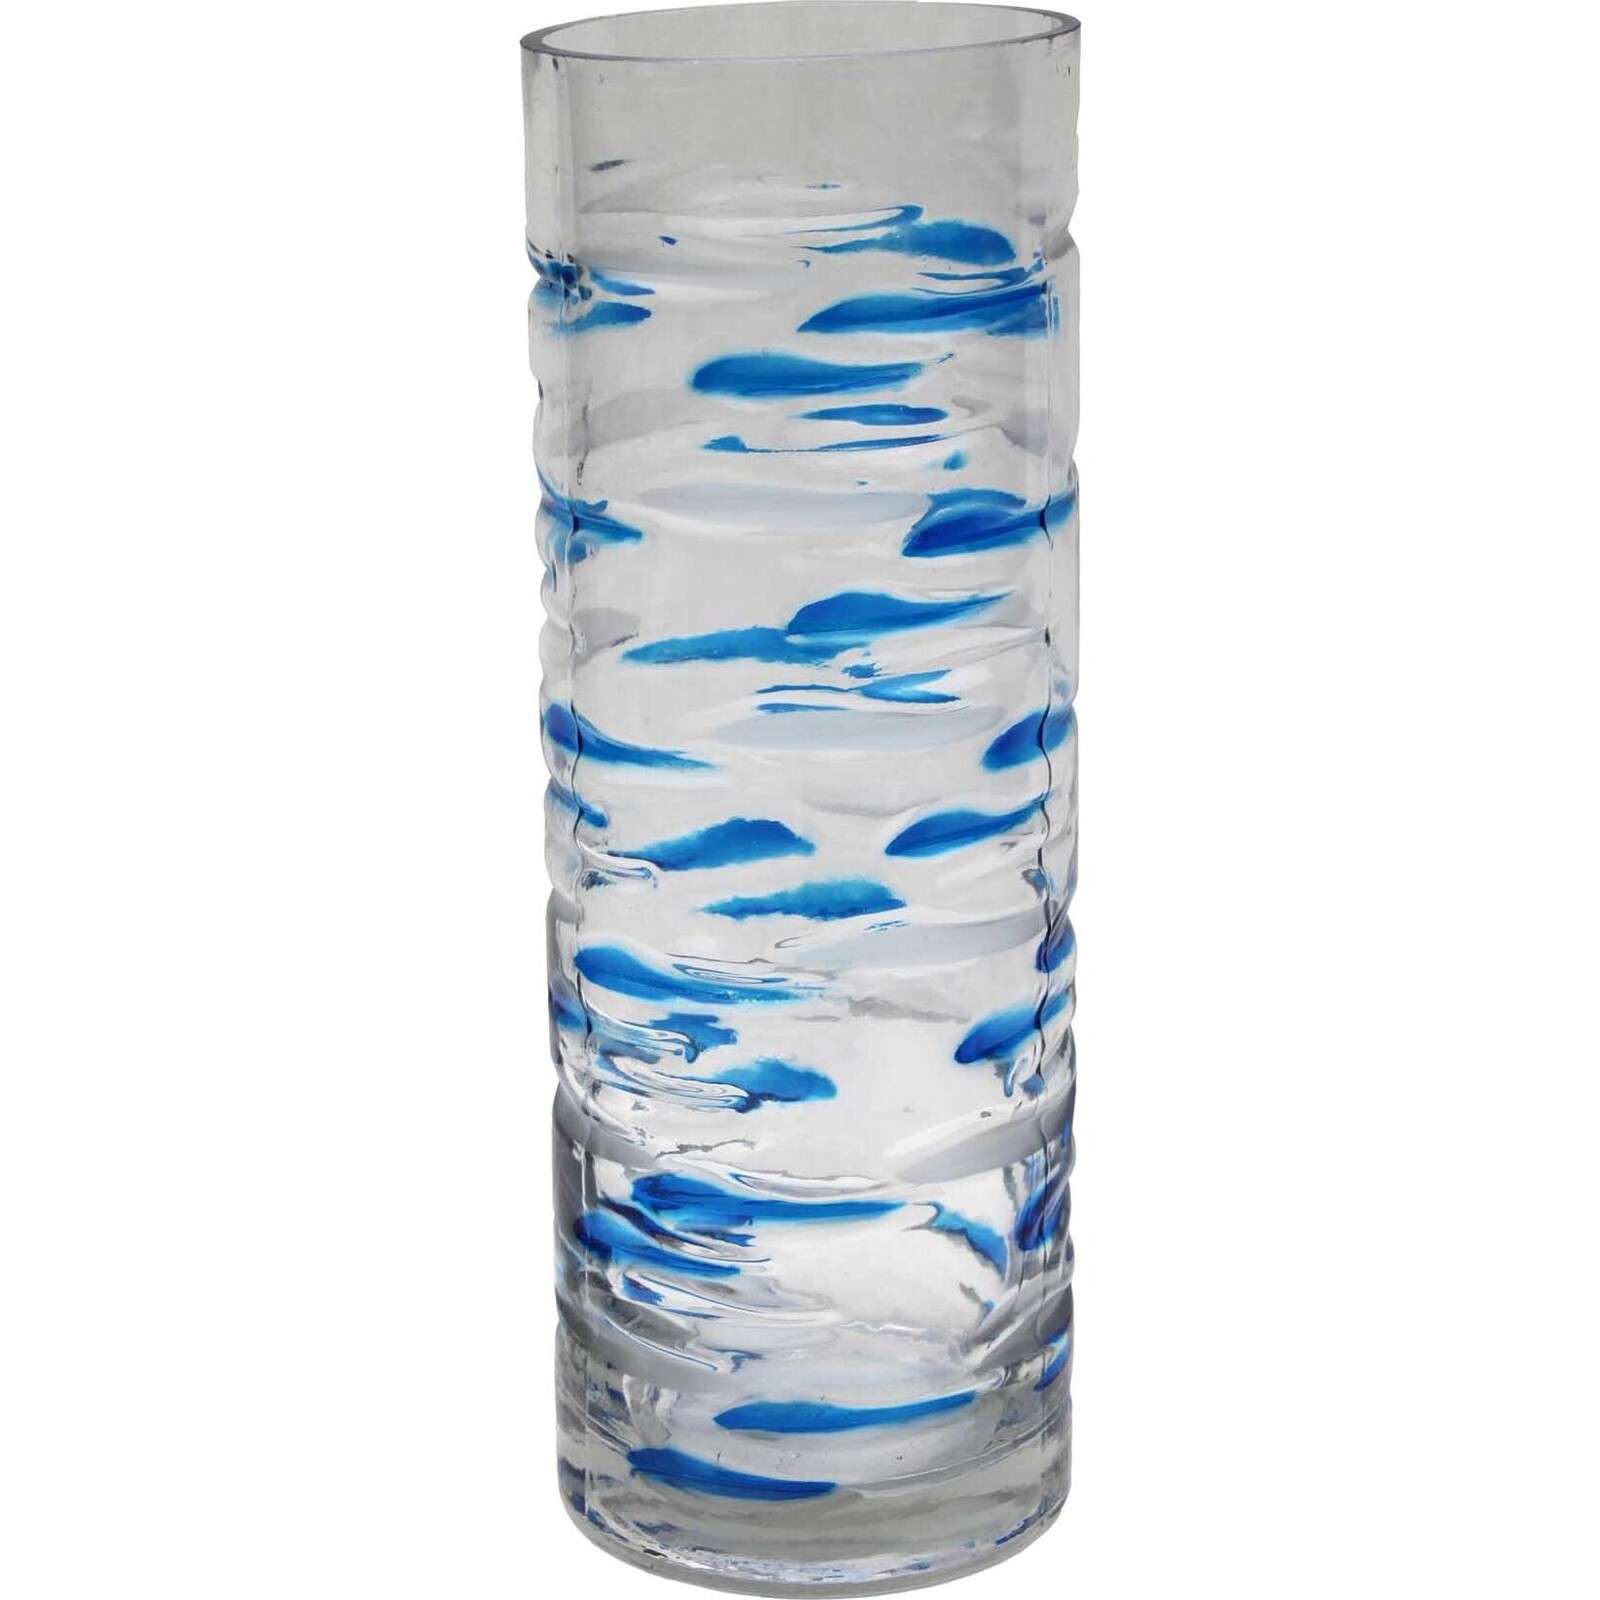 Glass Vase - Blue Streak